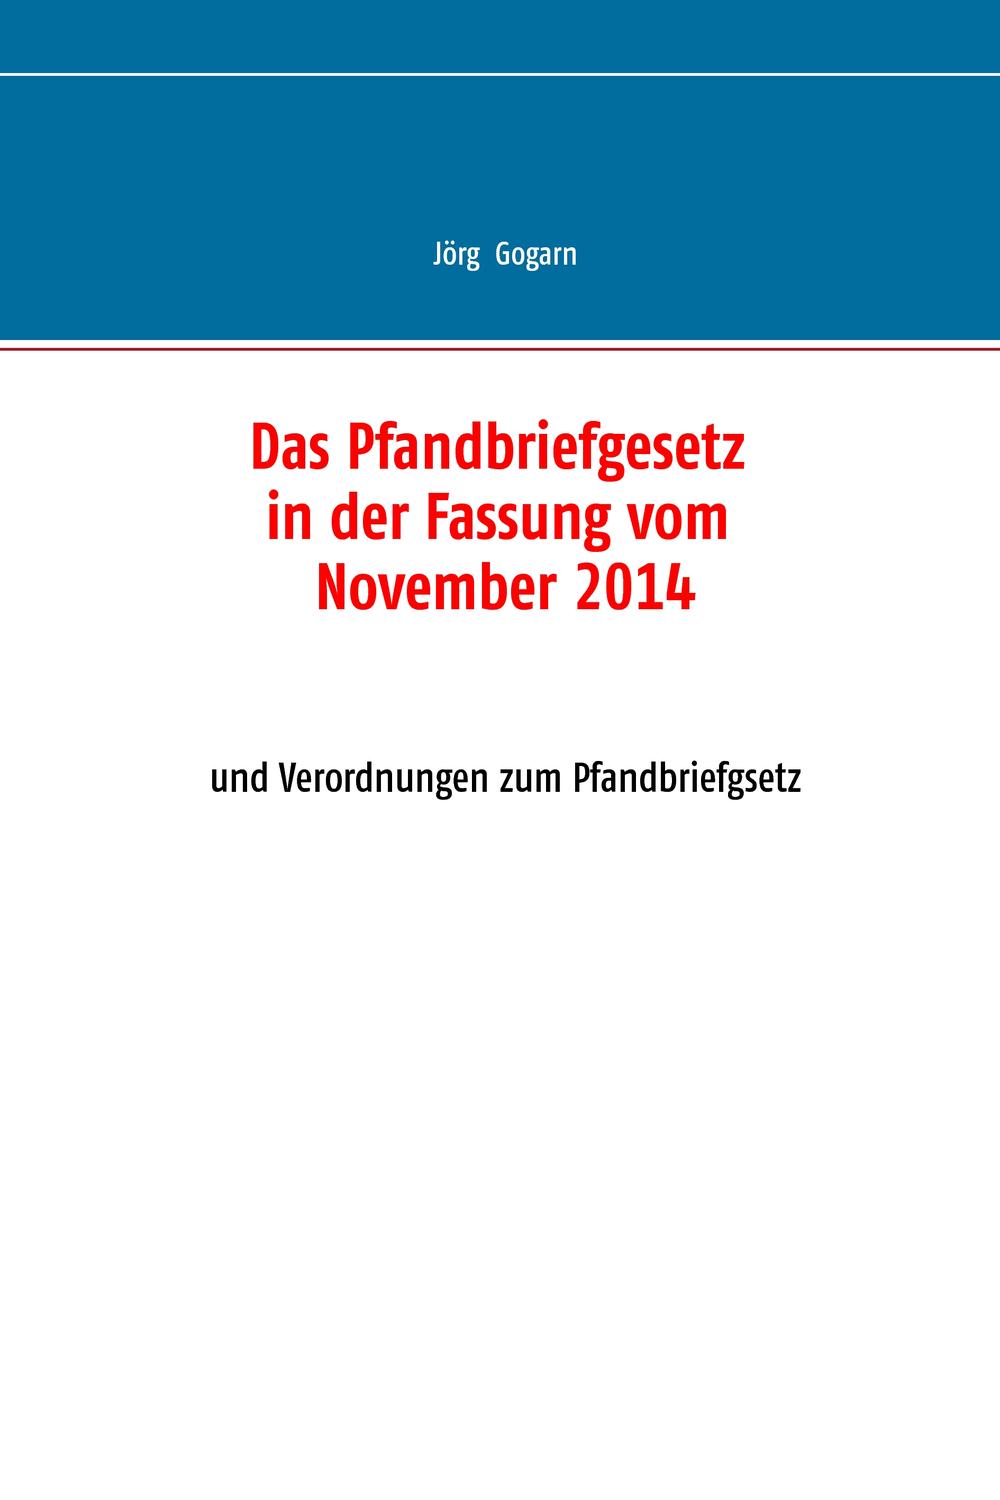 Das Pfandbriefgesetz in der Fassung vom November 2014 - Jörg Gogarn, JG BC Projekt & Service GmbH